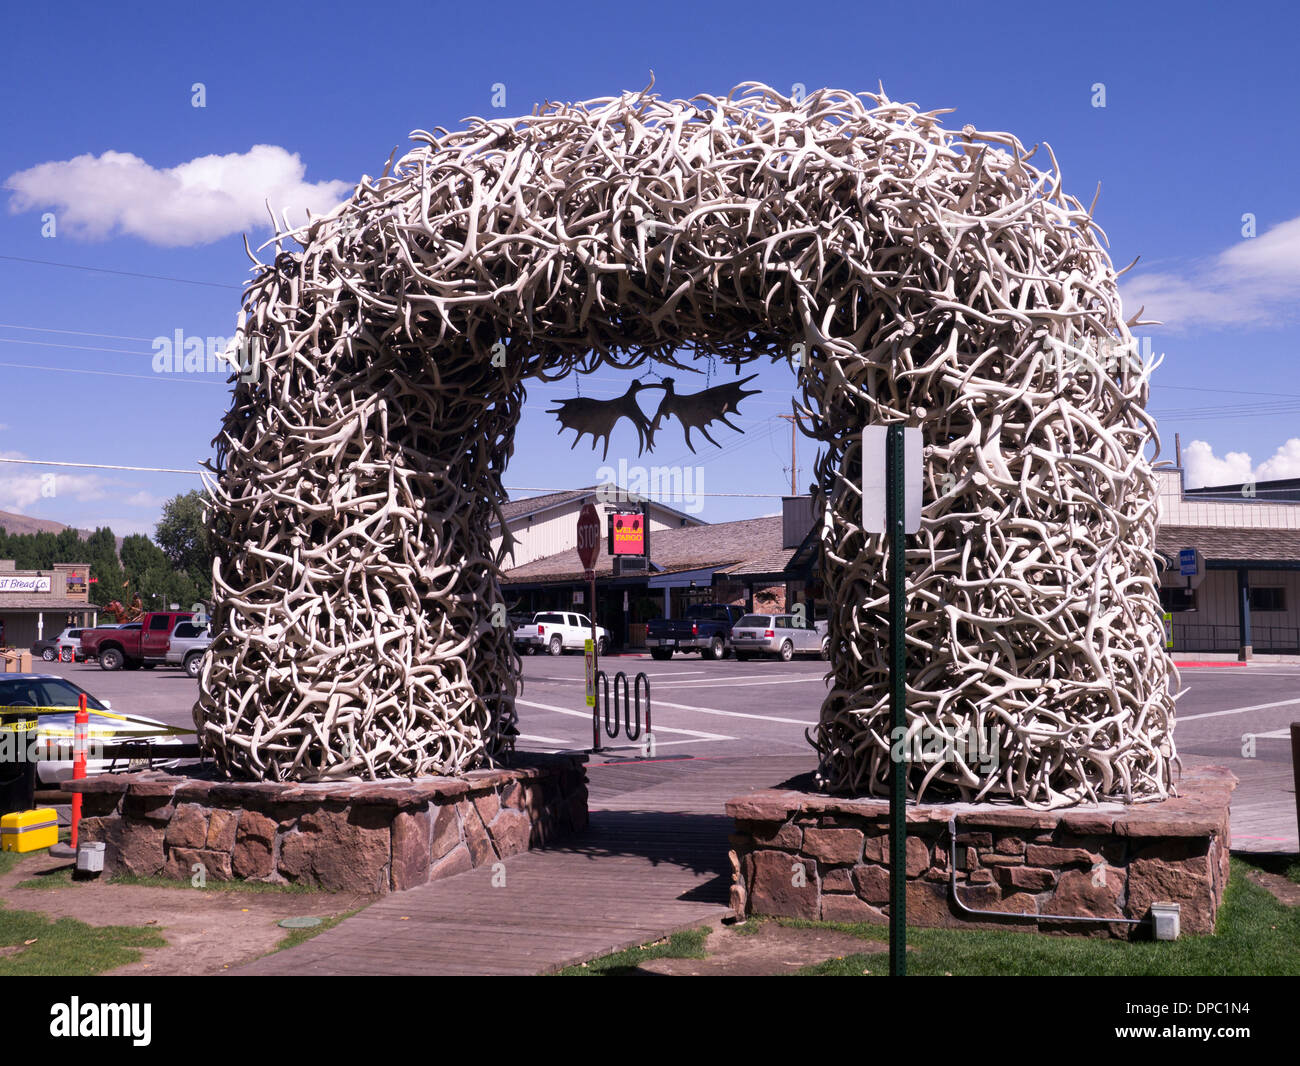 El arco de la cornamenta de ciervo en la plaza de la ciudad de Jackson Hole, Wyoming, EE.UU. Foto de stock